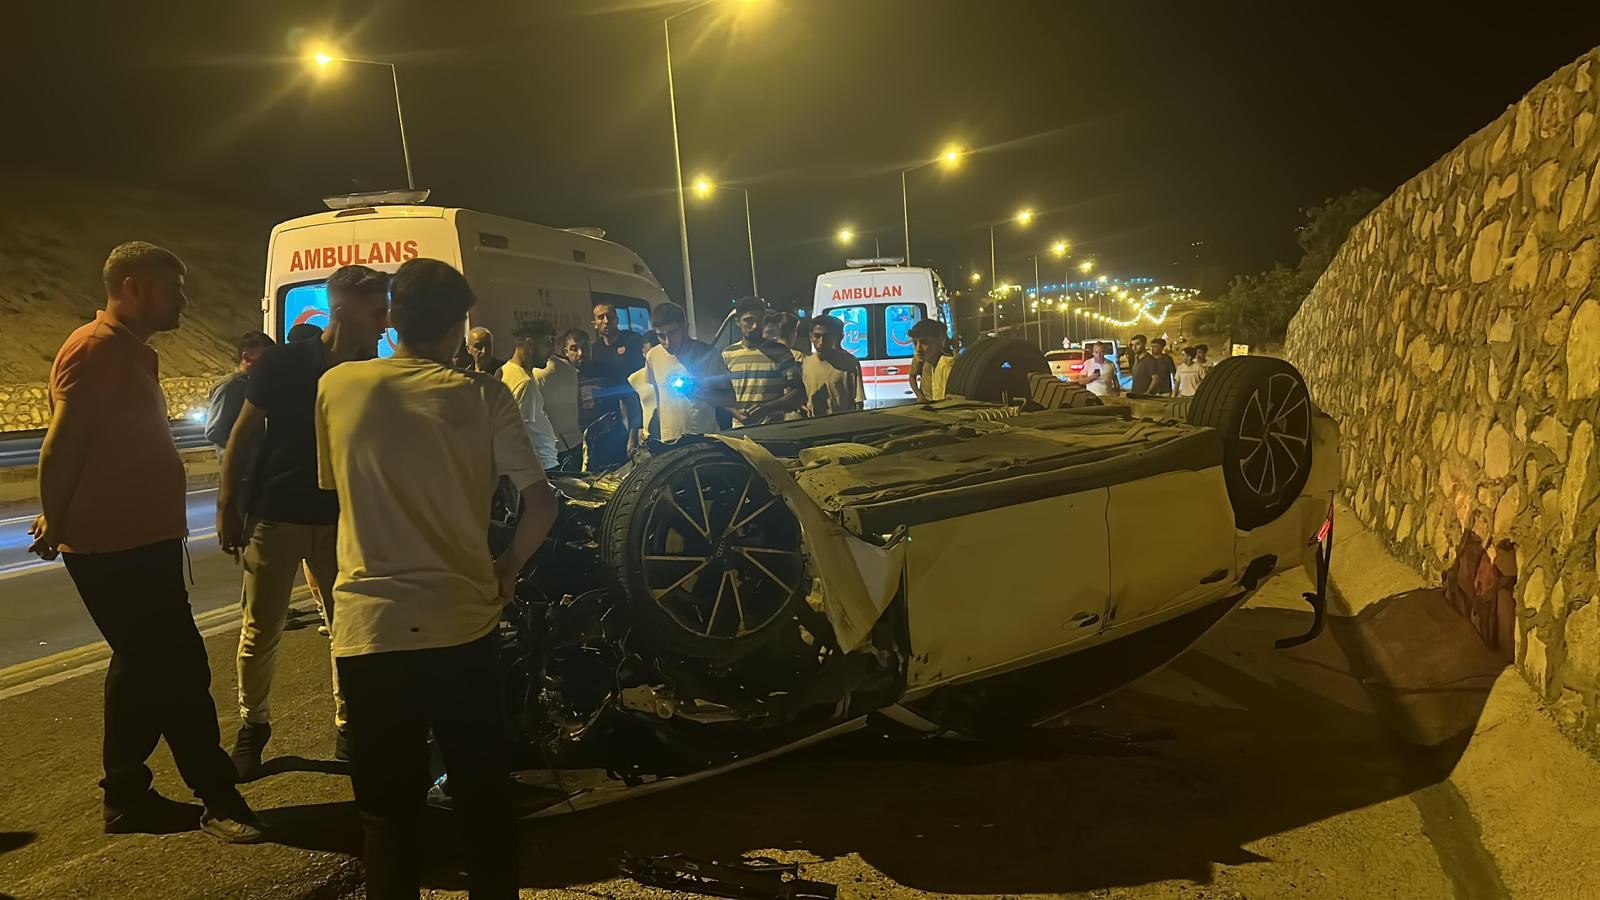 Siirt’te otomobil takla attı: 3 yaralı